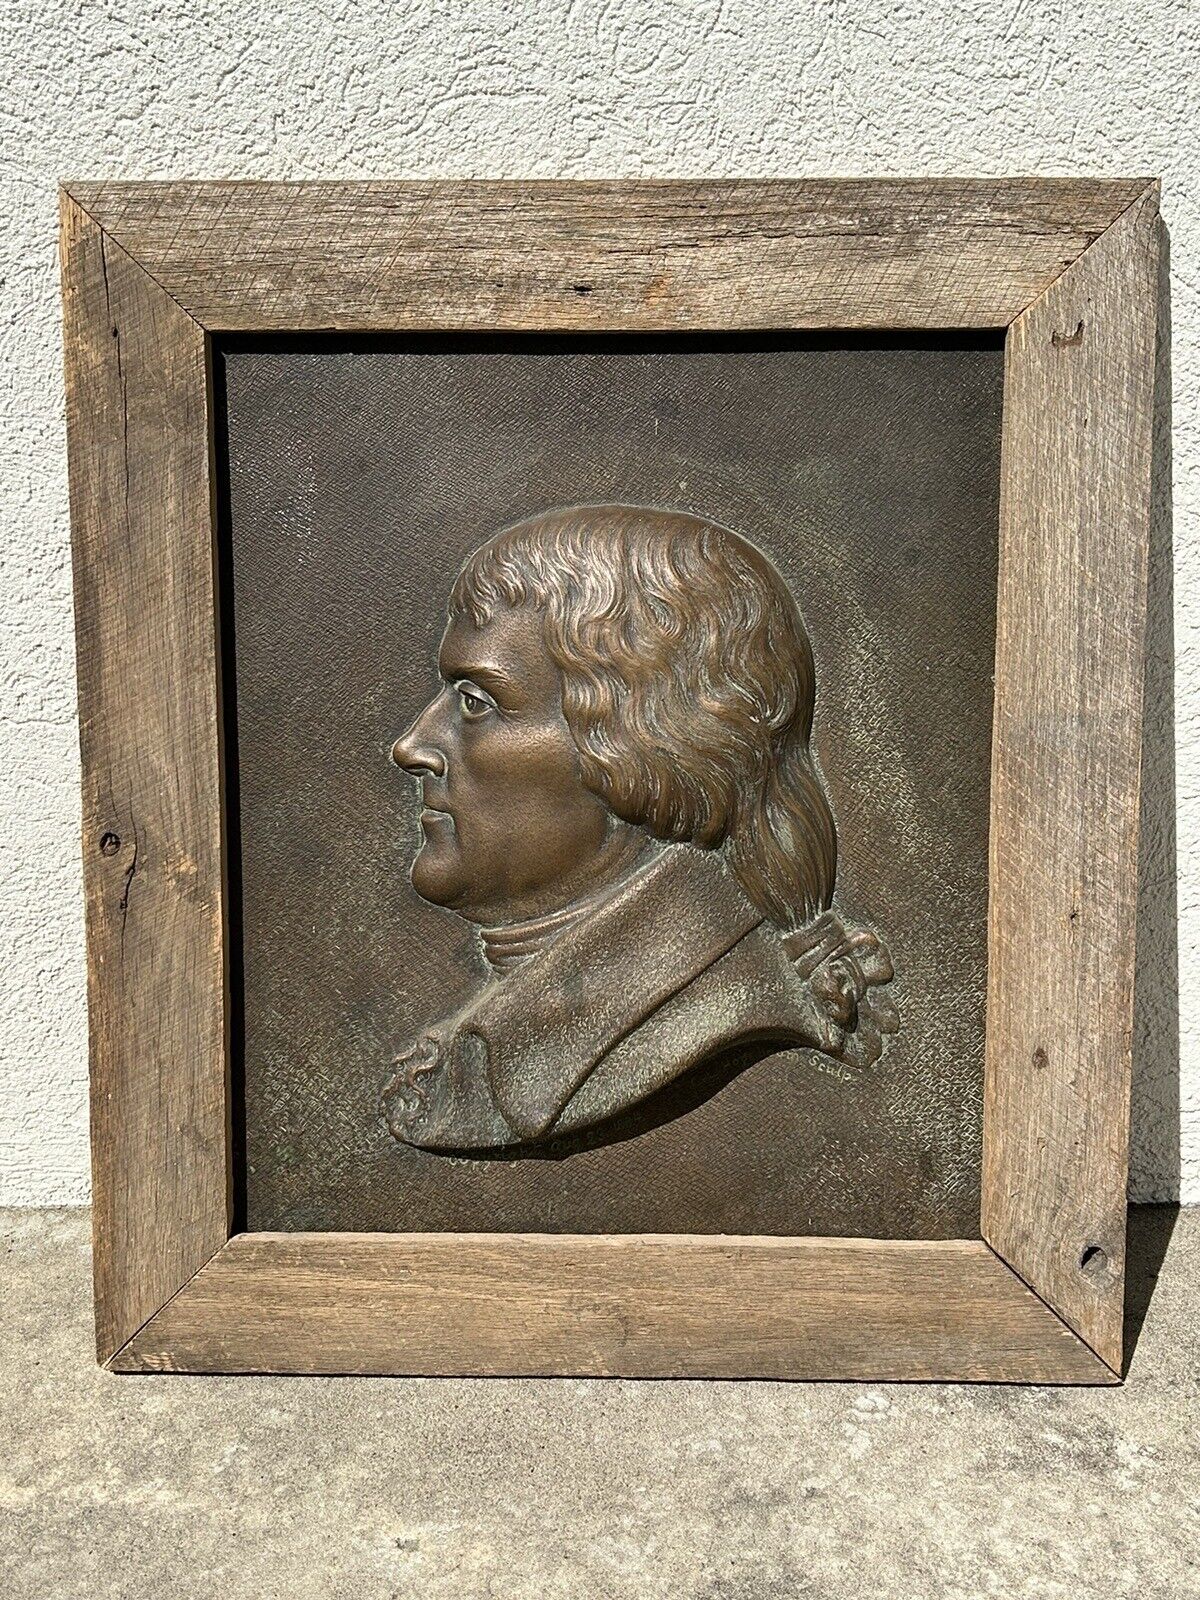 Large Thomas Jefferson Bronze Bas-Relief Portrait by C. L. Hogeboom- 1884-Rare